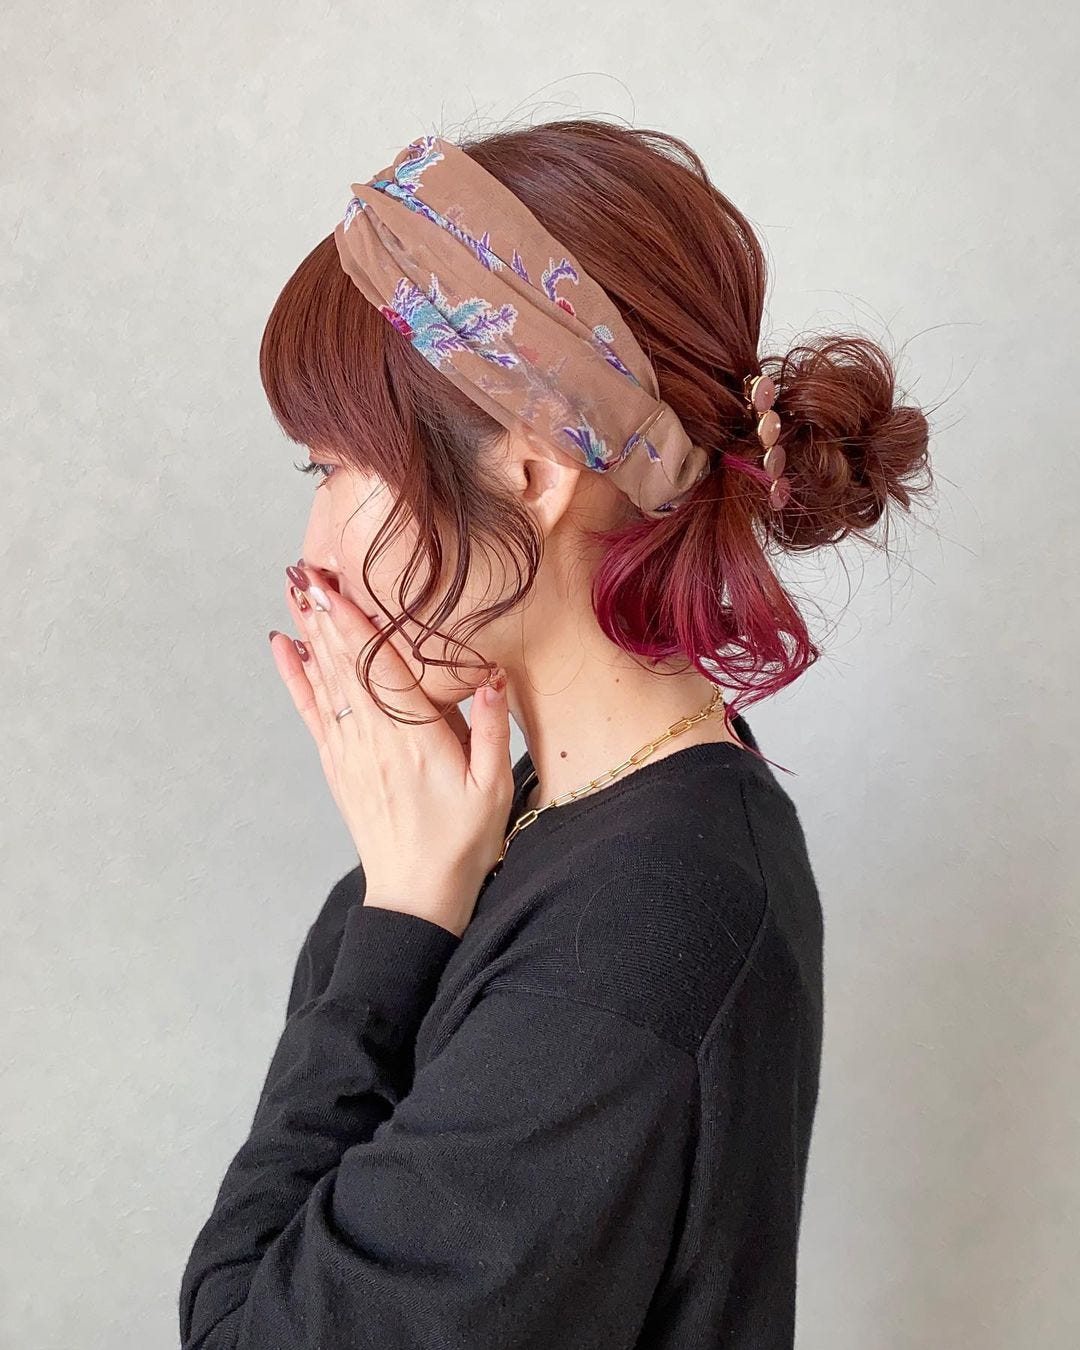 ターバンで作る大人のヘアアレンジ14選 40代女性こそおしゃれにキマる付け方 モデルプレス